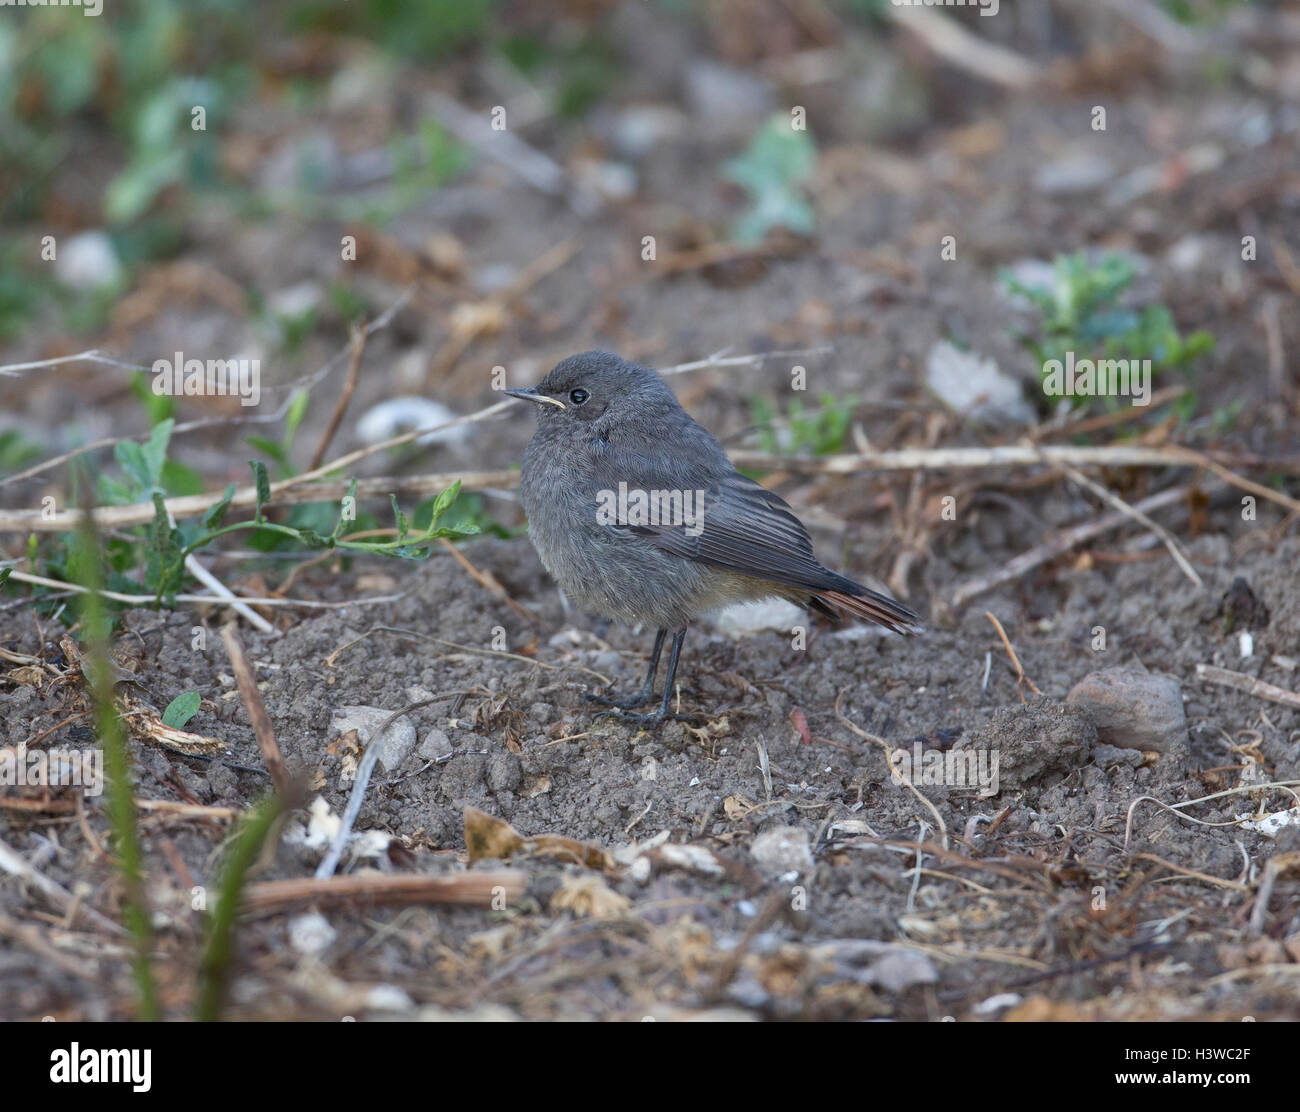 Black Redstart ,Phoenicurus ochruros in a garden, Northern Spain Stock Photo